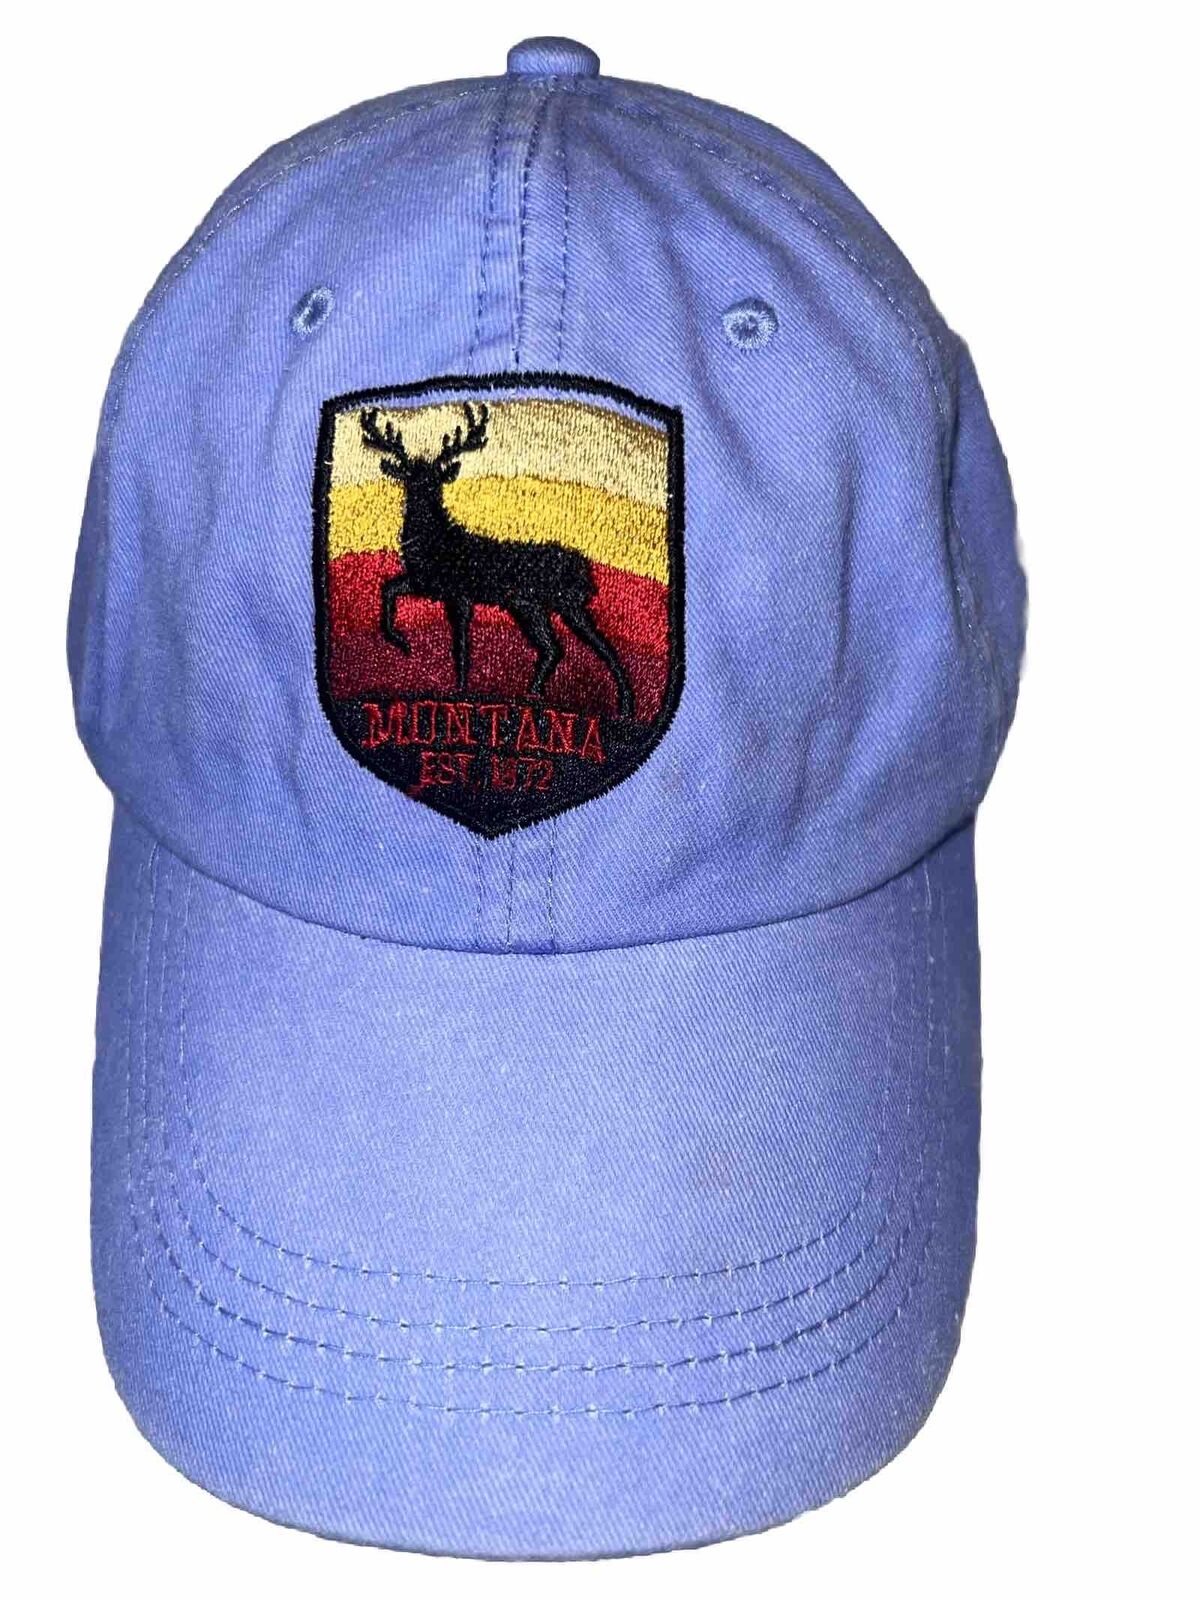 Montana Patch w Elk Est 1872 on Purple Hat Cap Washed Cotton Hook Loop VGC